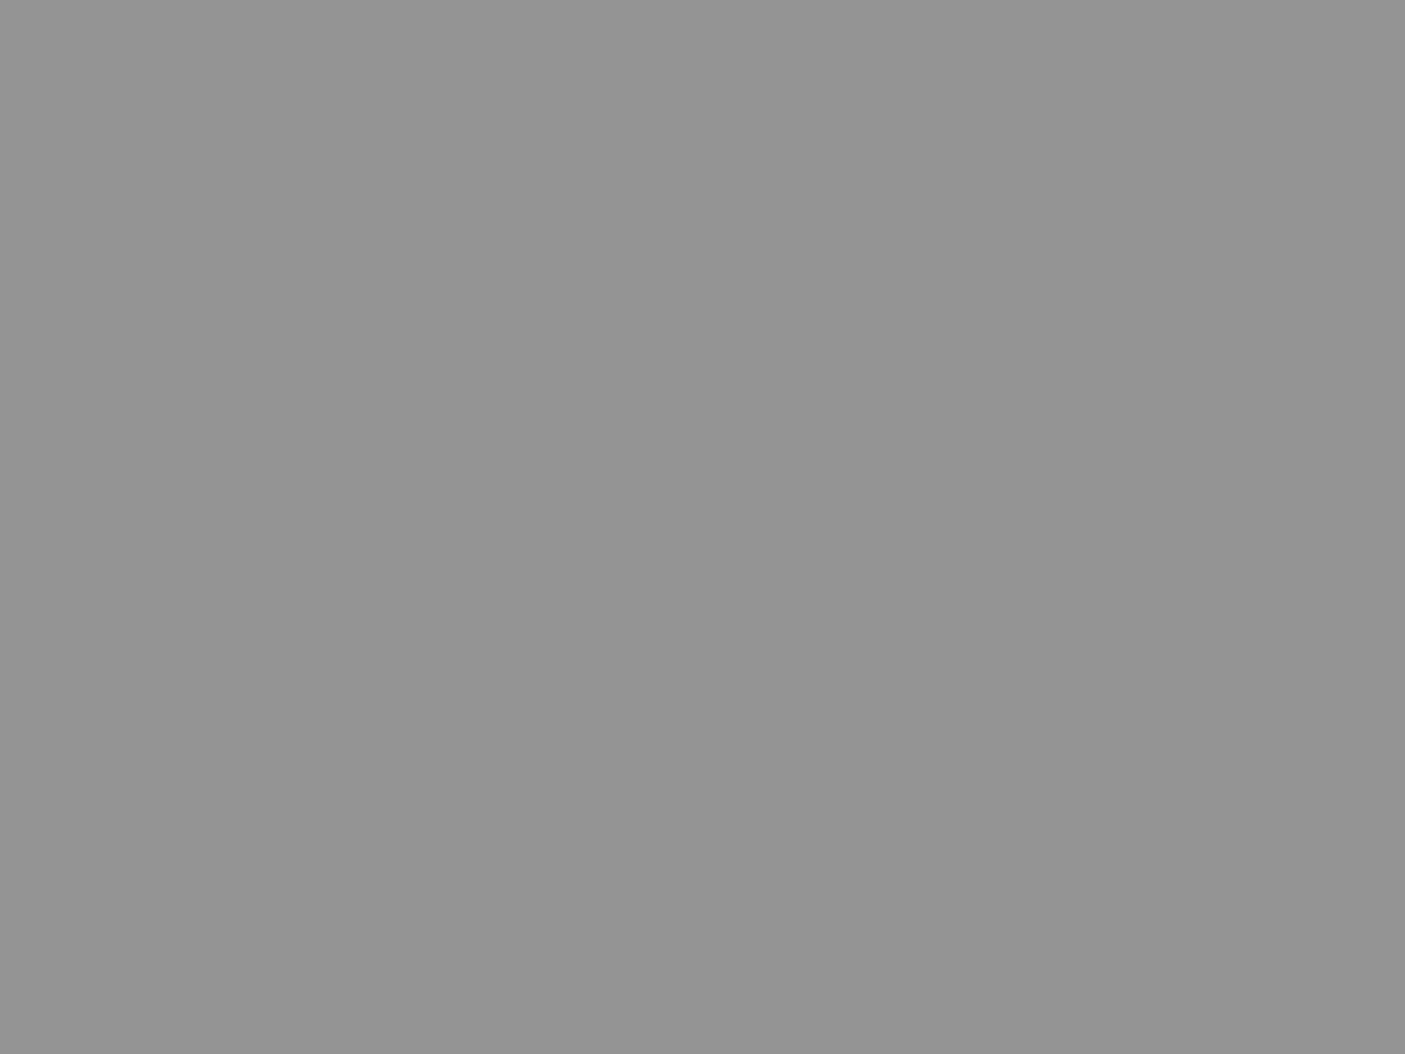 Слева направо: бывшая гостиница «Дрезден», перестроенный дворец князя Матвея Гагарина и бывшее доходное конторско-гостиничное здание Саввинского подворья на Тверской улице до ее реконструкции. Москва, 1930–1932 годы. Фотография: ТАСС